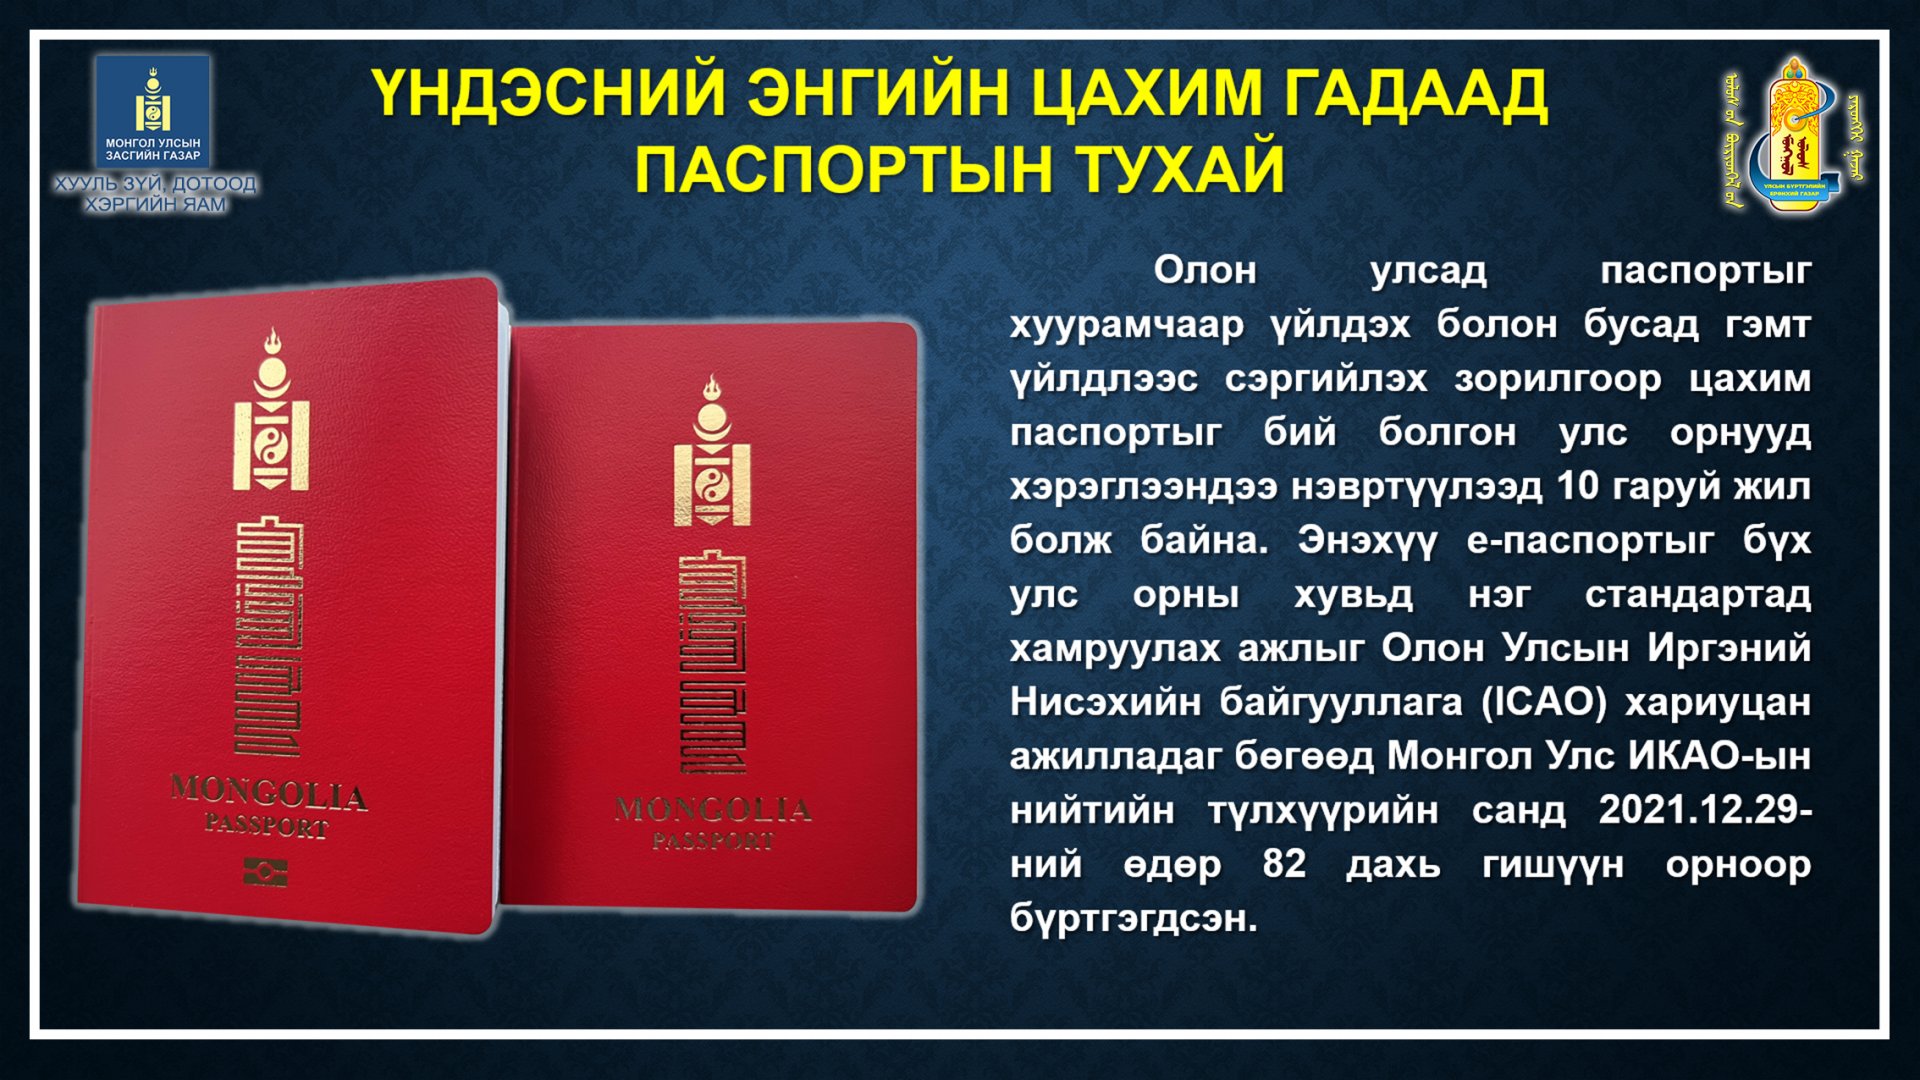 Үндэсний энгийн болон цахим гадаад паспорт олгож байна.